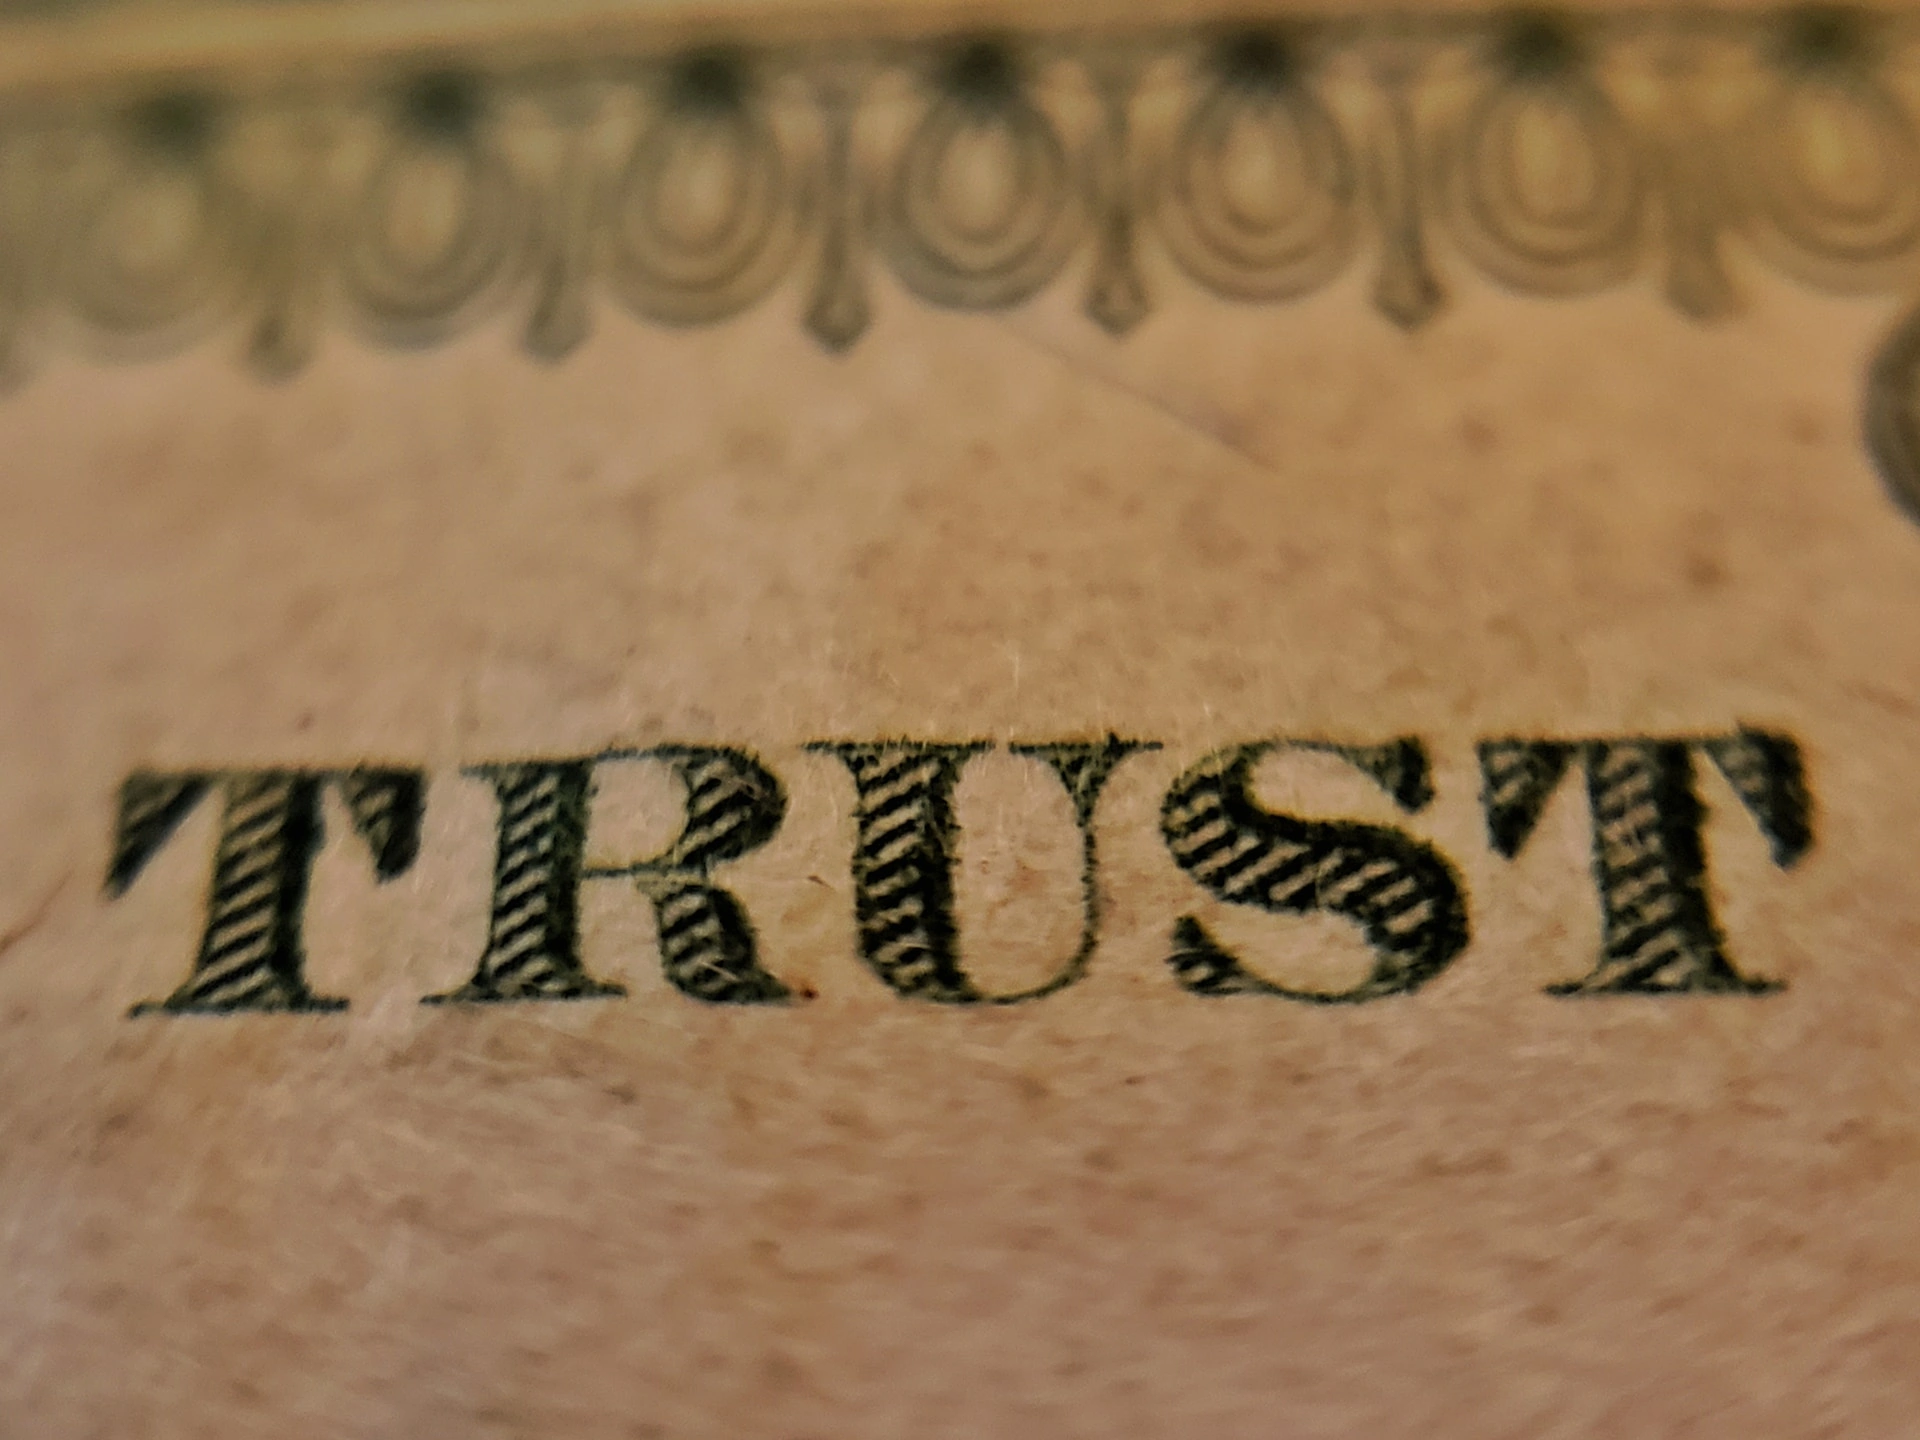 Quando você pode confiar em um corretor?